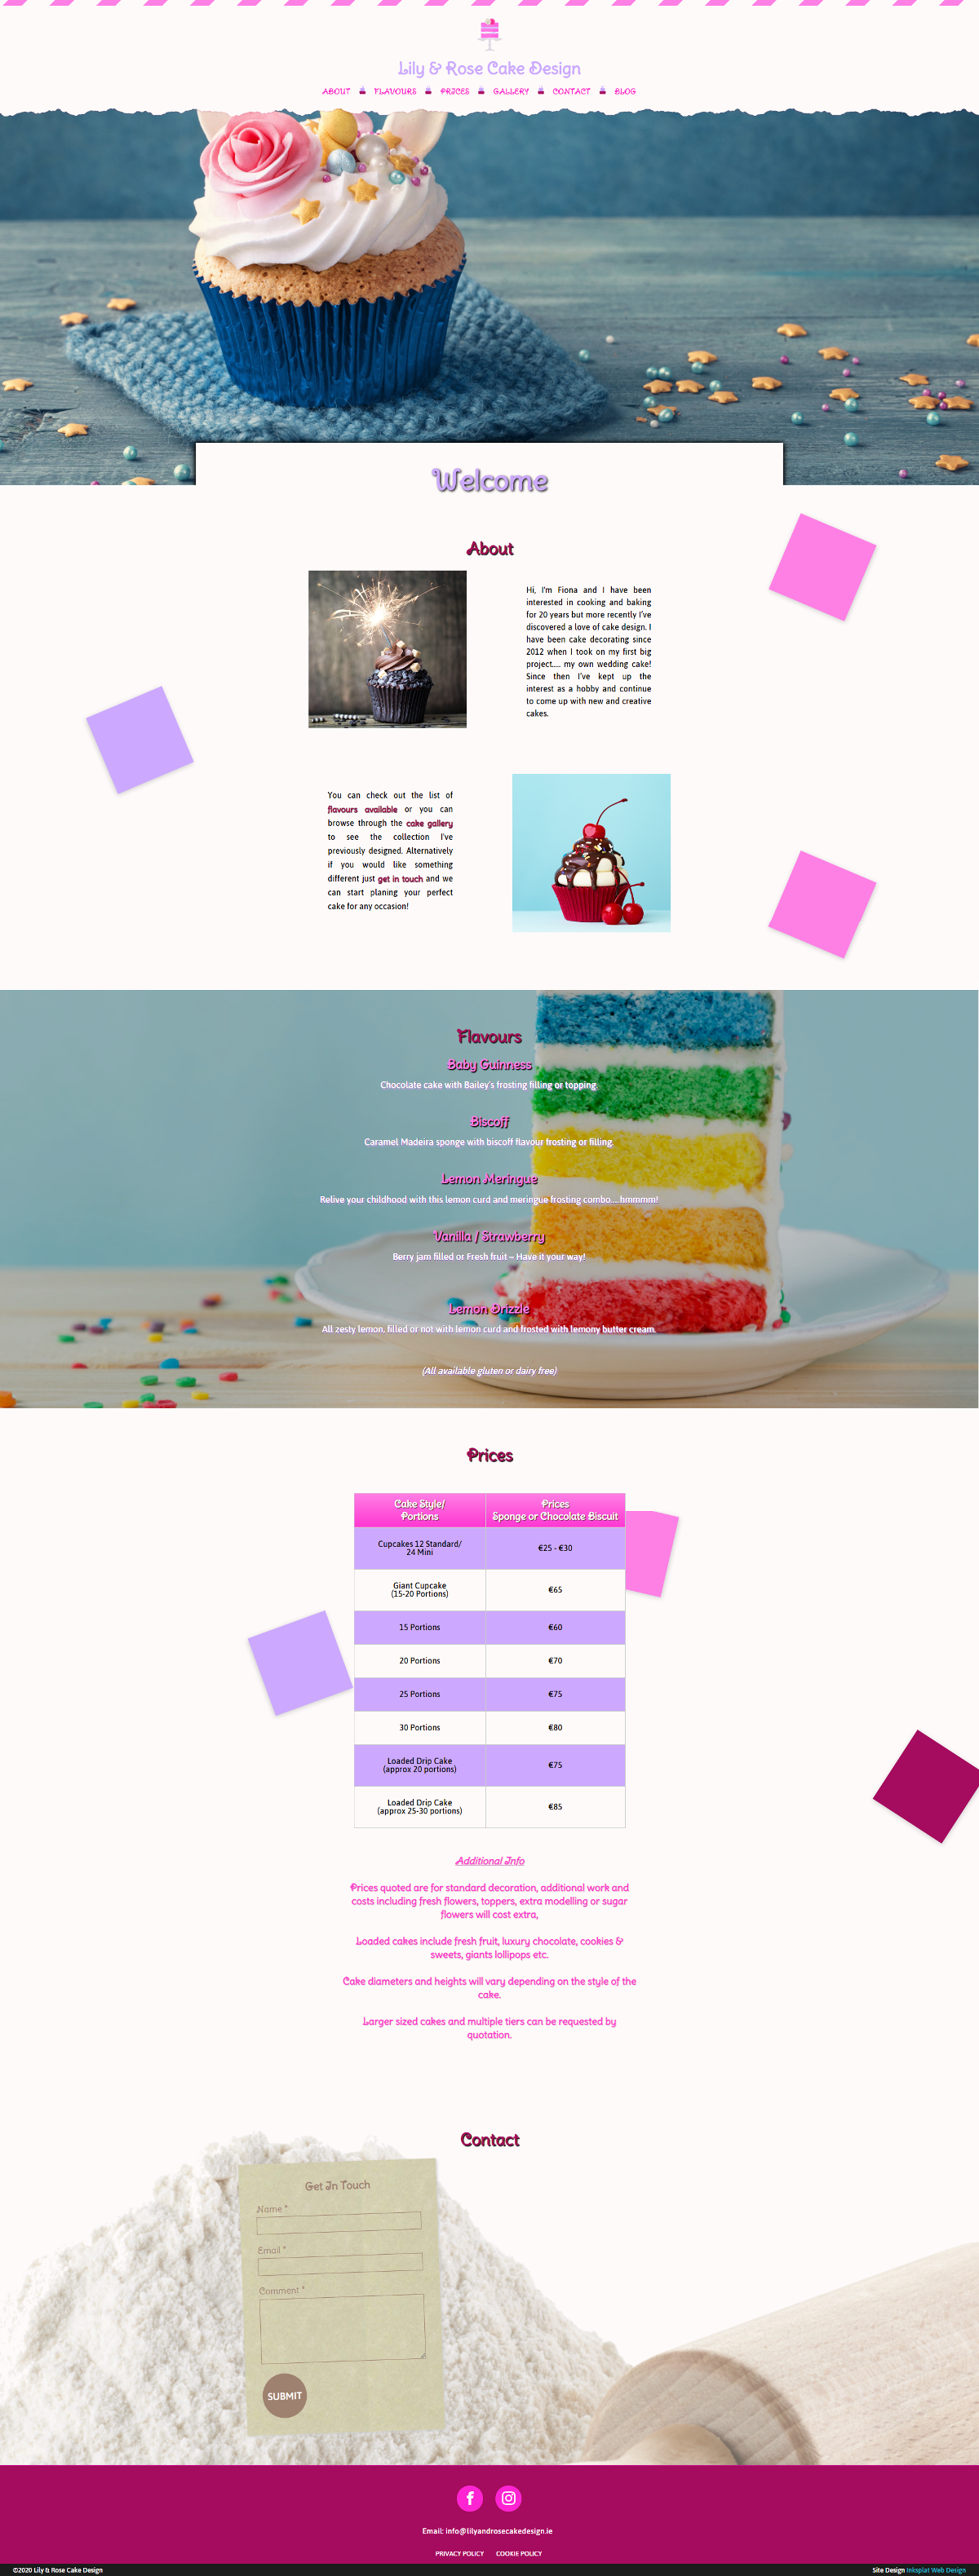 Bespoke bakery web design Dublin